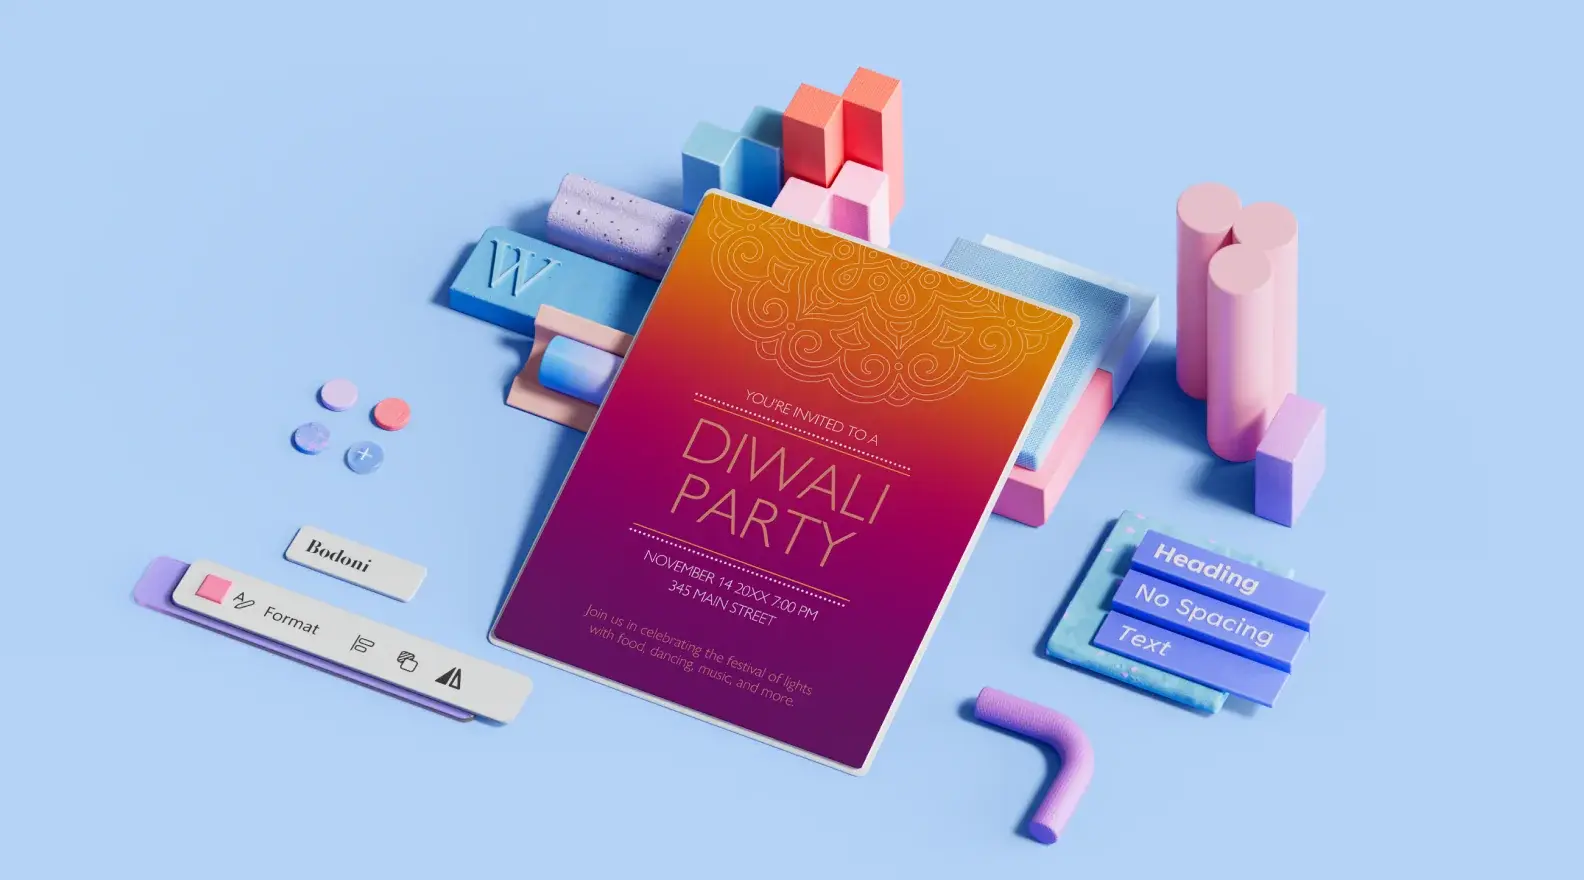 Szablon plakatu informującego o wydarzeniu z okazji święta Diwali otoczony elementami projektu 3D